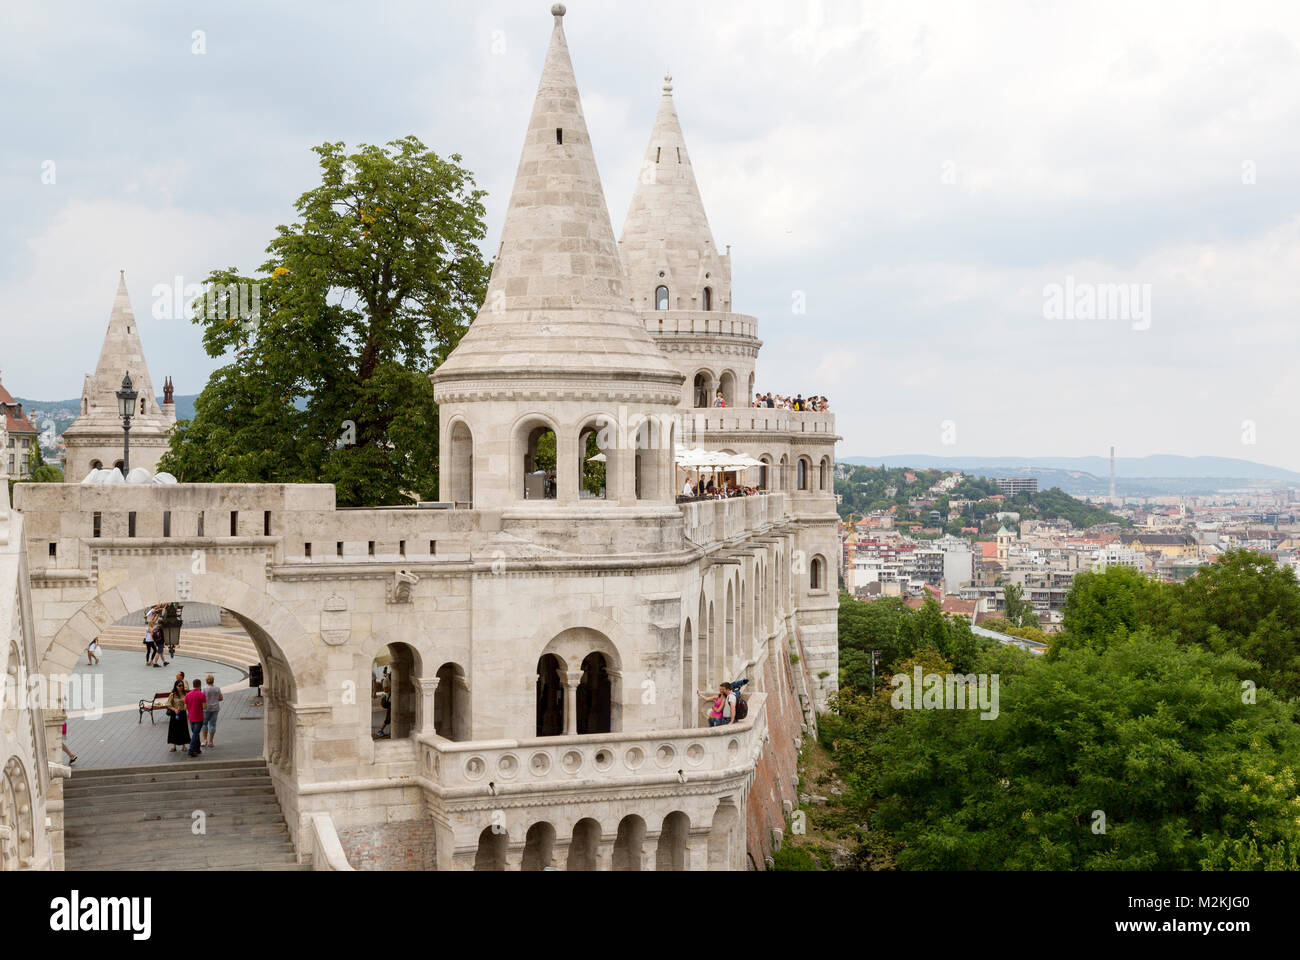 Du Bastion des pêcheurs, une destination touristique populaire sur la colline du château, sur le côté Buda de Budapest. Belle vue du côté Pest et restaurants. Banque D'Images